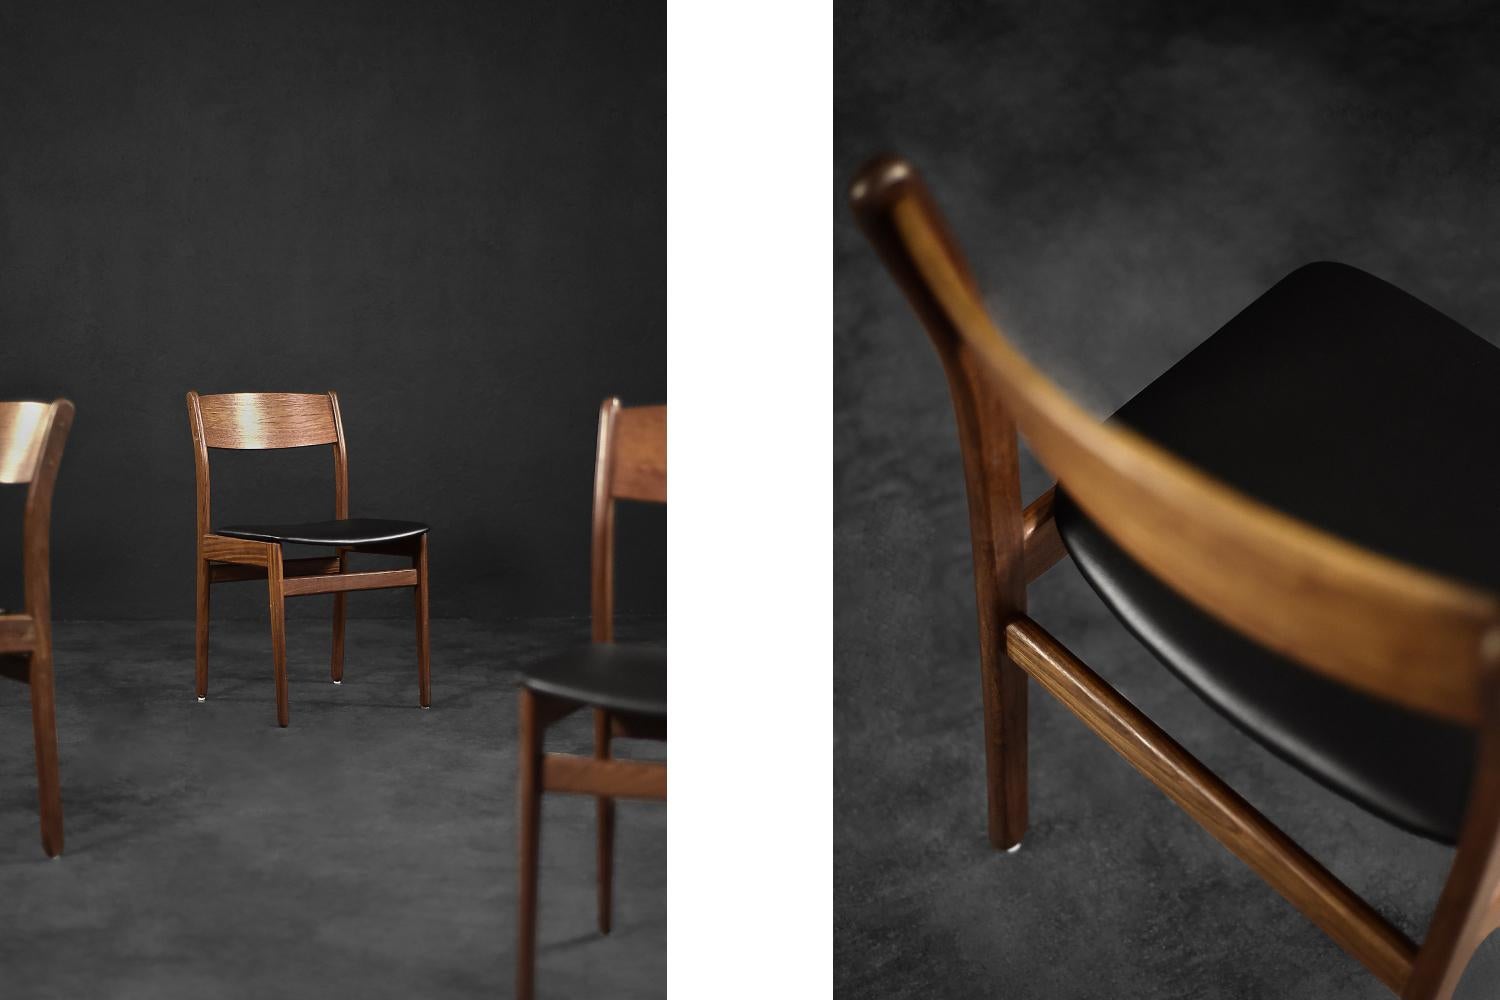 Cet ensemble de quatre chaises de salle à manger a été fabriqué au Danemark dans les années 1960. Les chaises sont fabriquées en bois de teck dans une chaude nuance de brun. Les sièges ont été recouverts de vinyle noir de haute qualité. Les chaises